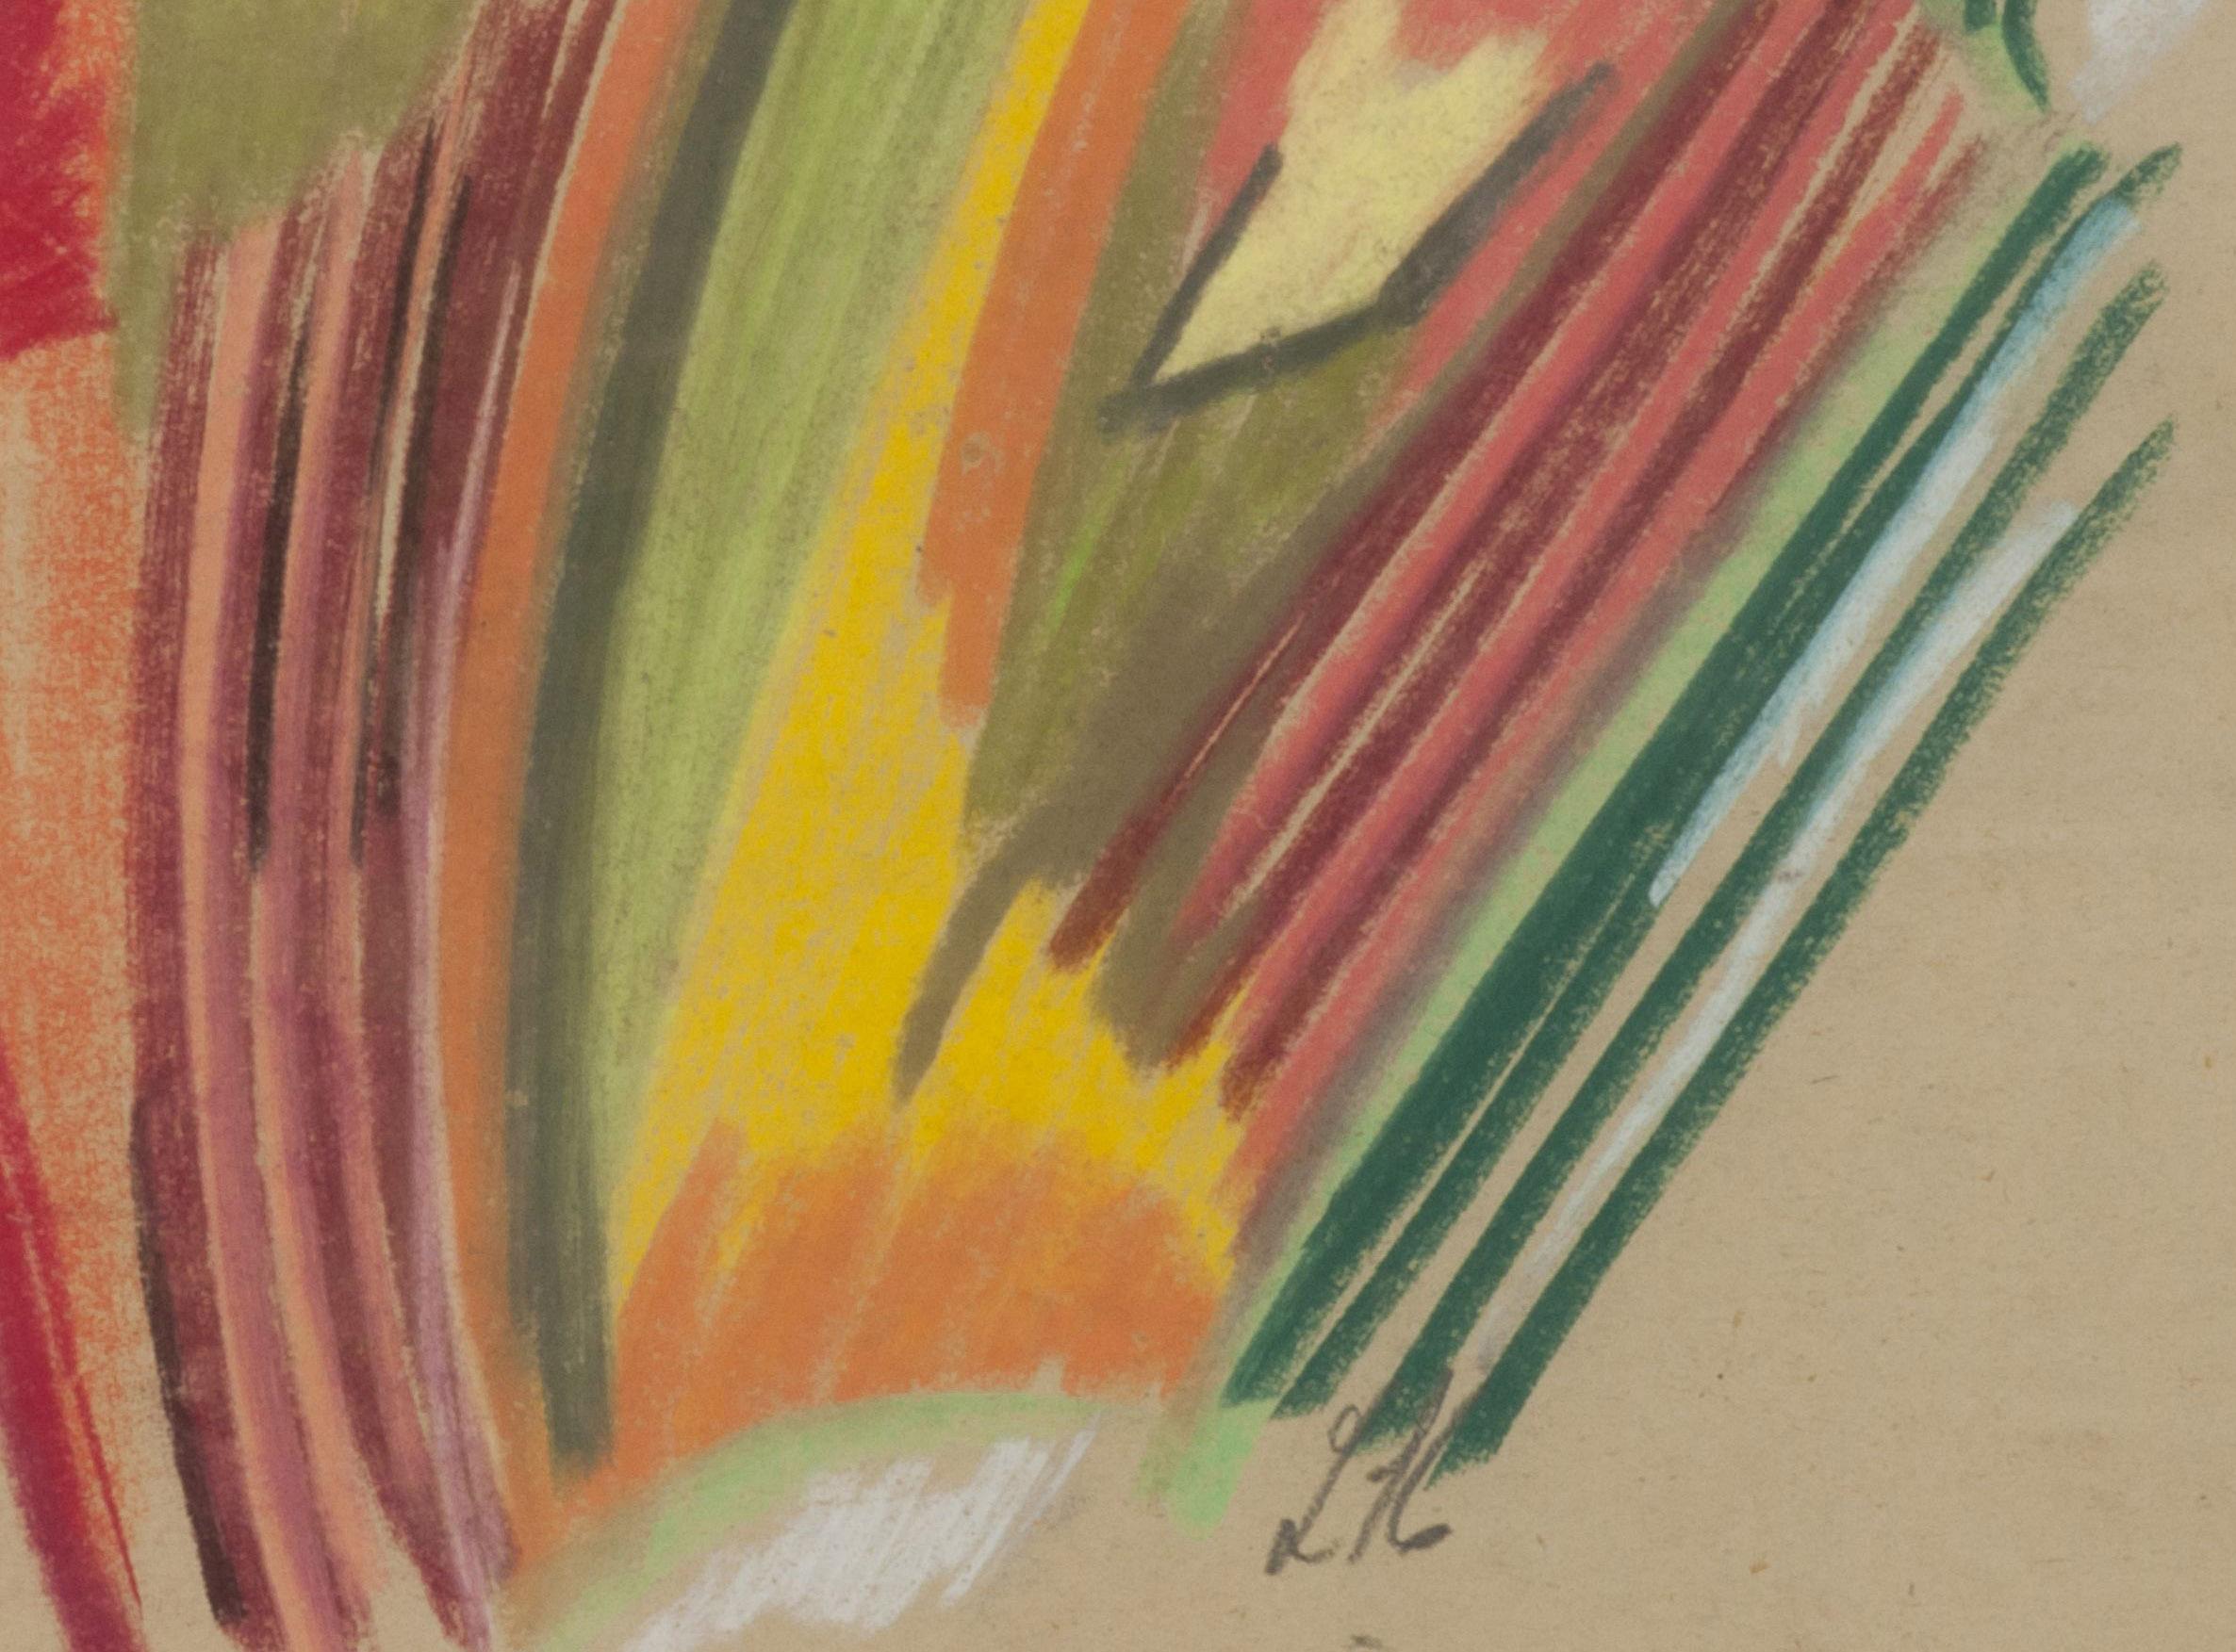 Unbenannt
Pastell auf Papier, 1922
Signiert mit den Initialen des Künstlers in Bleistift
Provenienz: Nachlass des Künstlers
                      Francis M. Nauman (Label)
                      Privatsammlung, NY
Ein sehr frühes